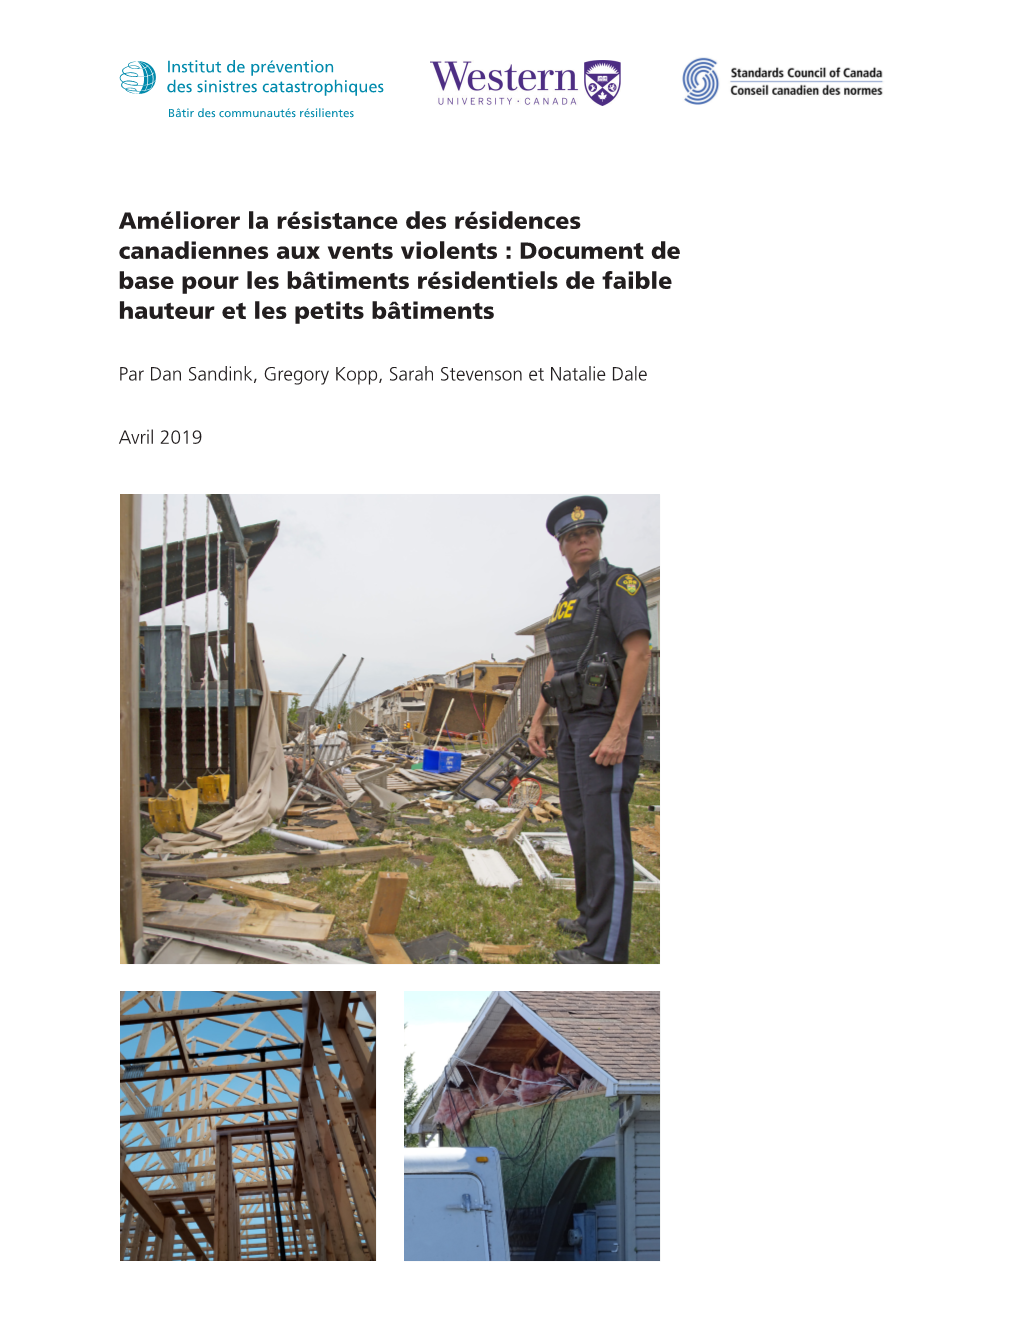 Améliorer La Résistance Des Résidences Canadiennes Aux Vents Violents : Document De Base Pour Les Bâtiments Résidentiels De Faible Hauteur Et Les Petits Bâtiments